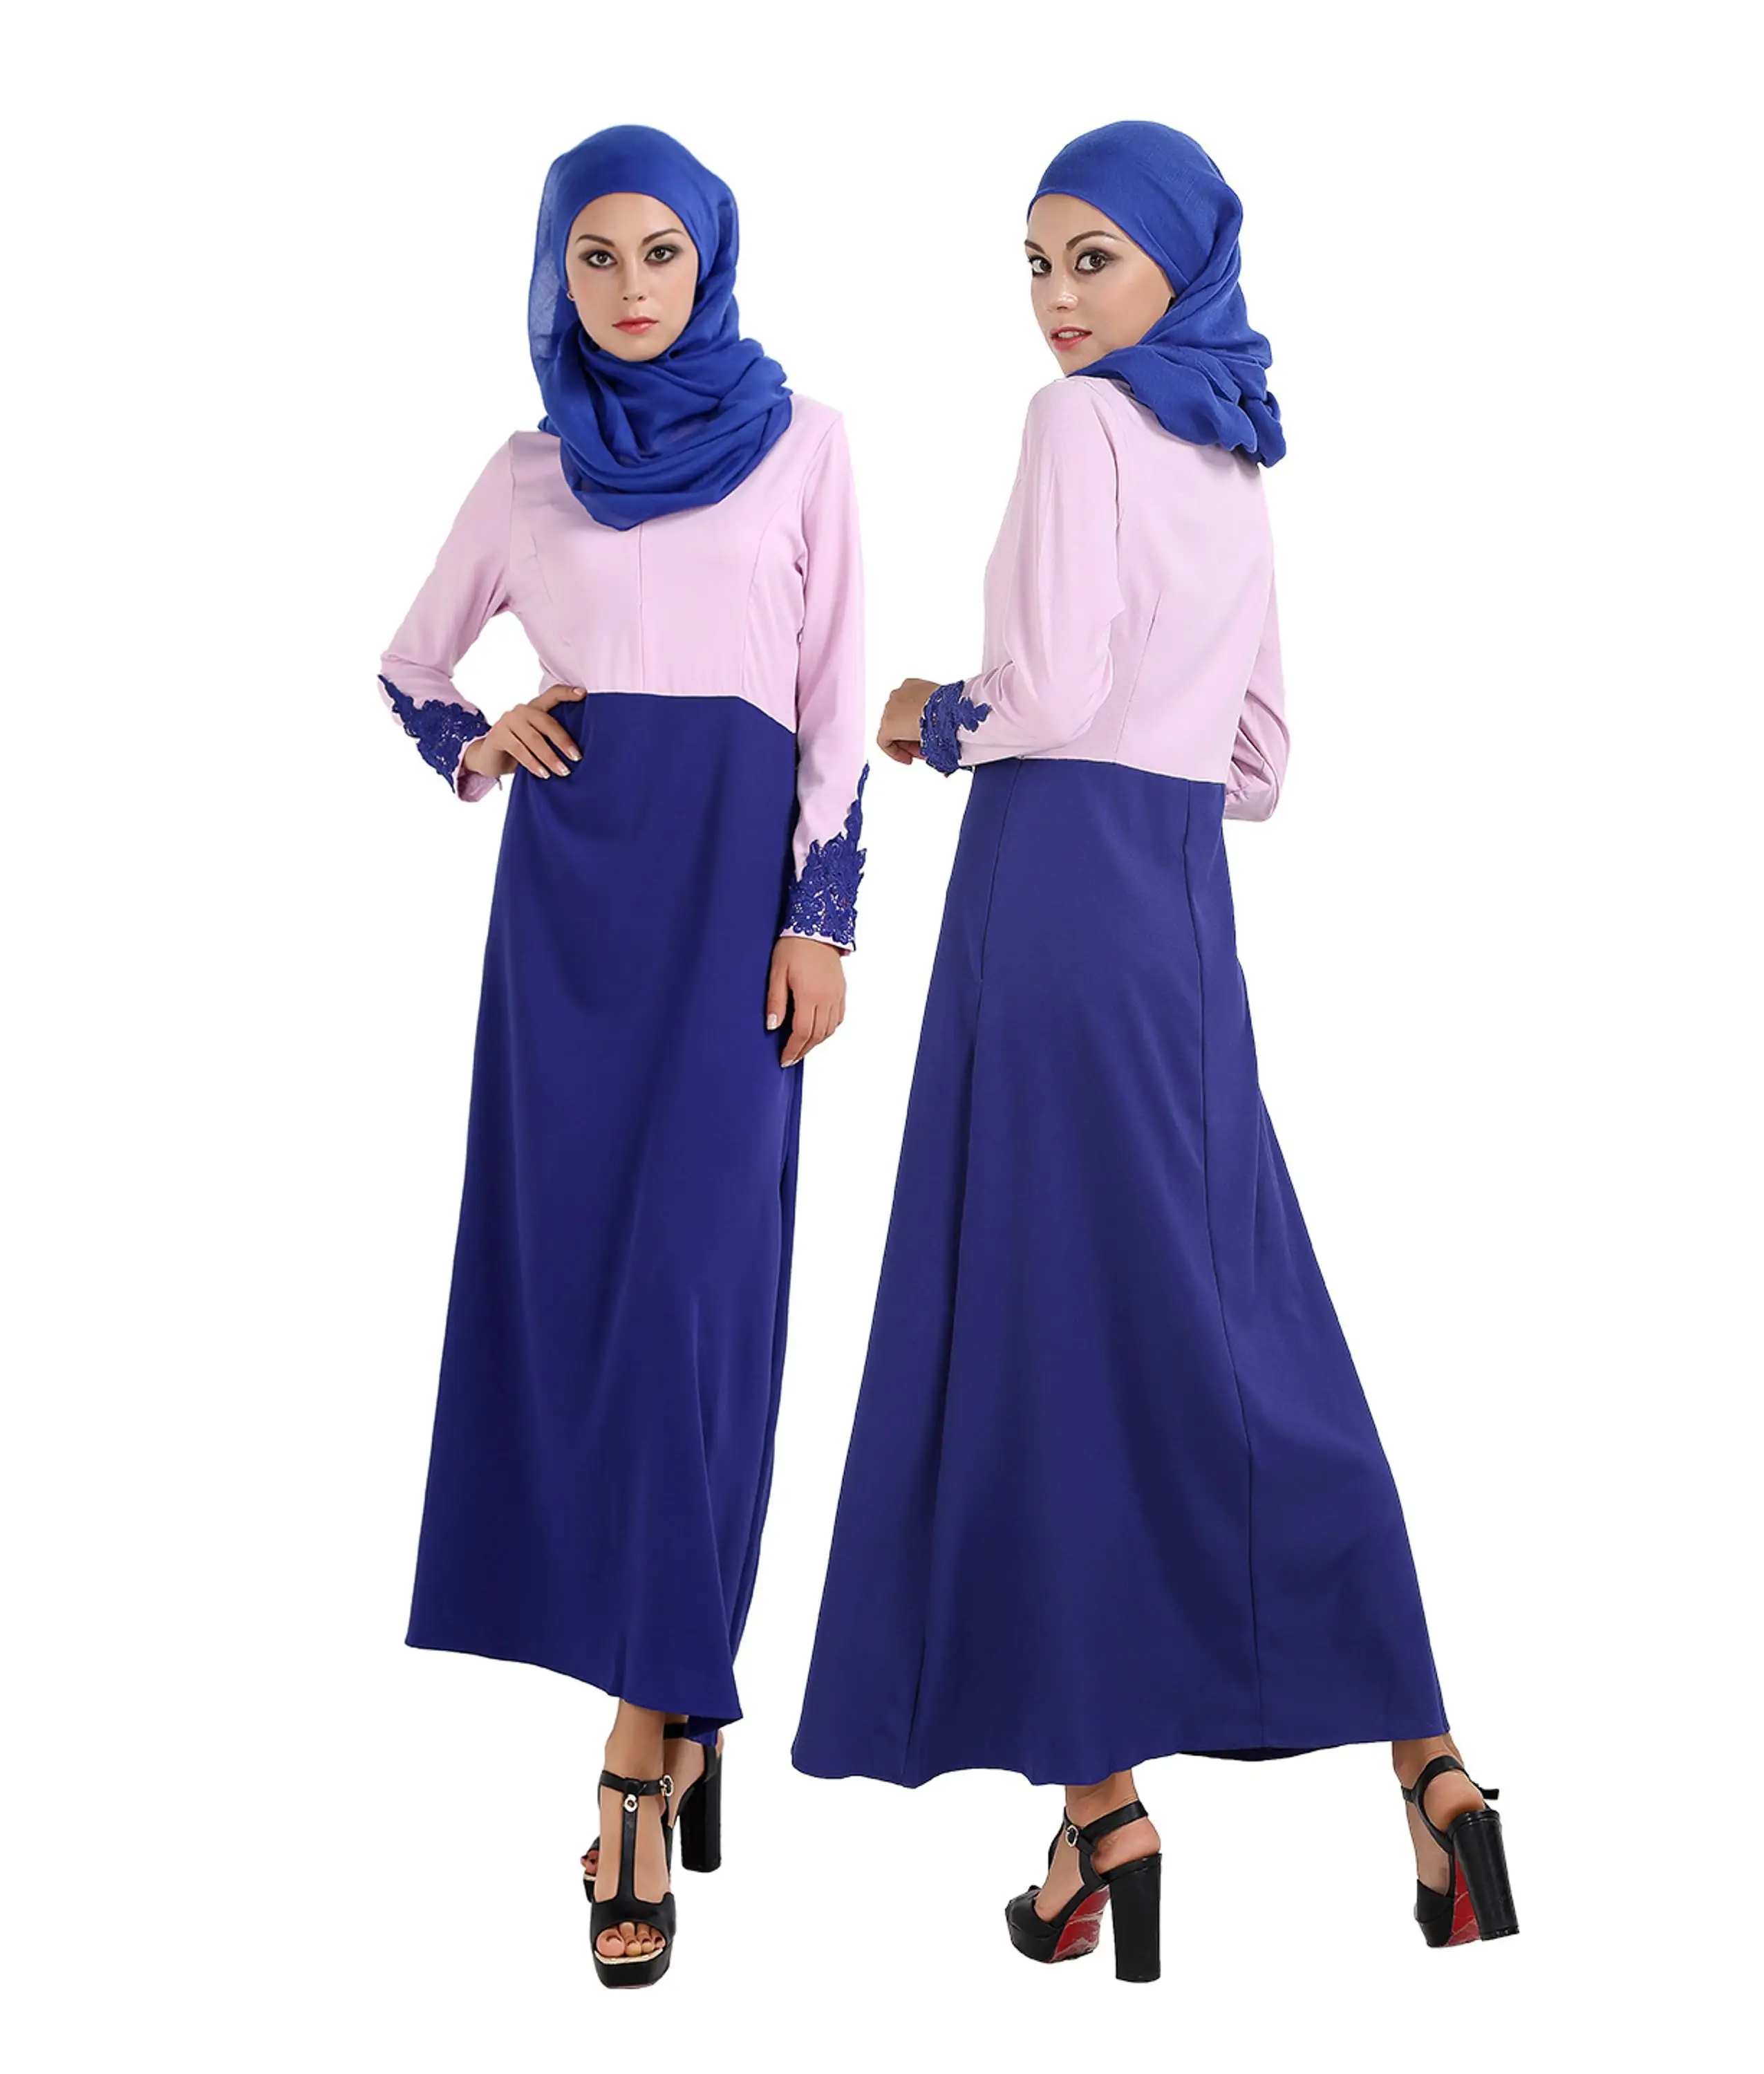 女性アラブ女性カフタンカフタンマレーシアアバヤドバイトルコ女性服女性イスラム教徒のドレスm Xlイスラムのアバヤドレス Buy Xl イスラムアバヤドレス 固体トルコドレス イスラム教徒トルコローブ Product On Alibaba Com